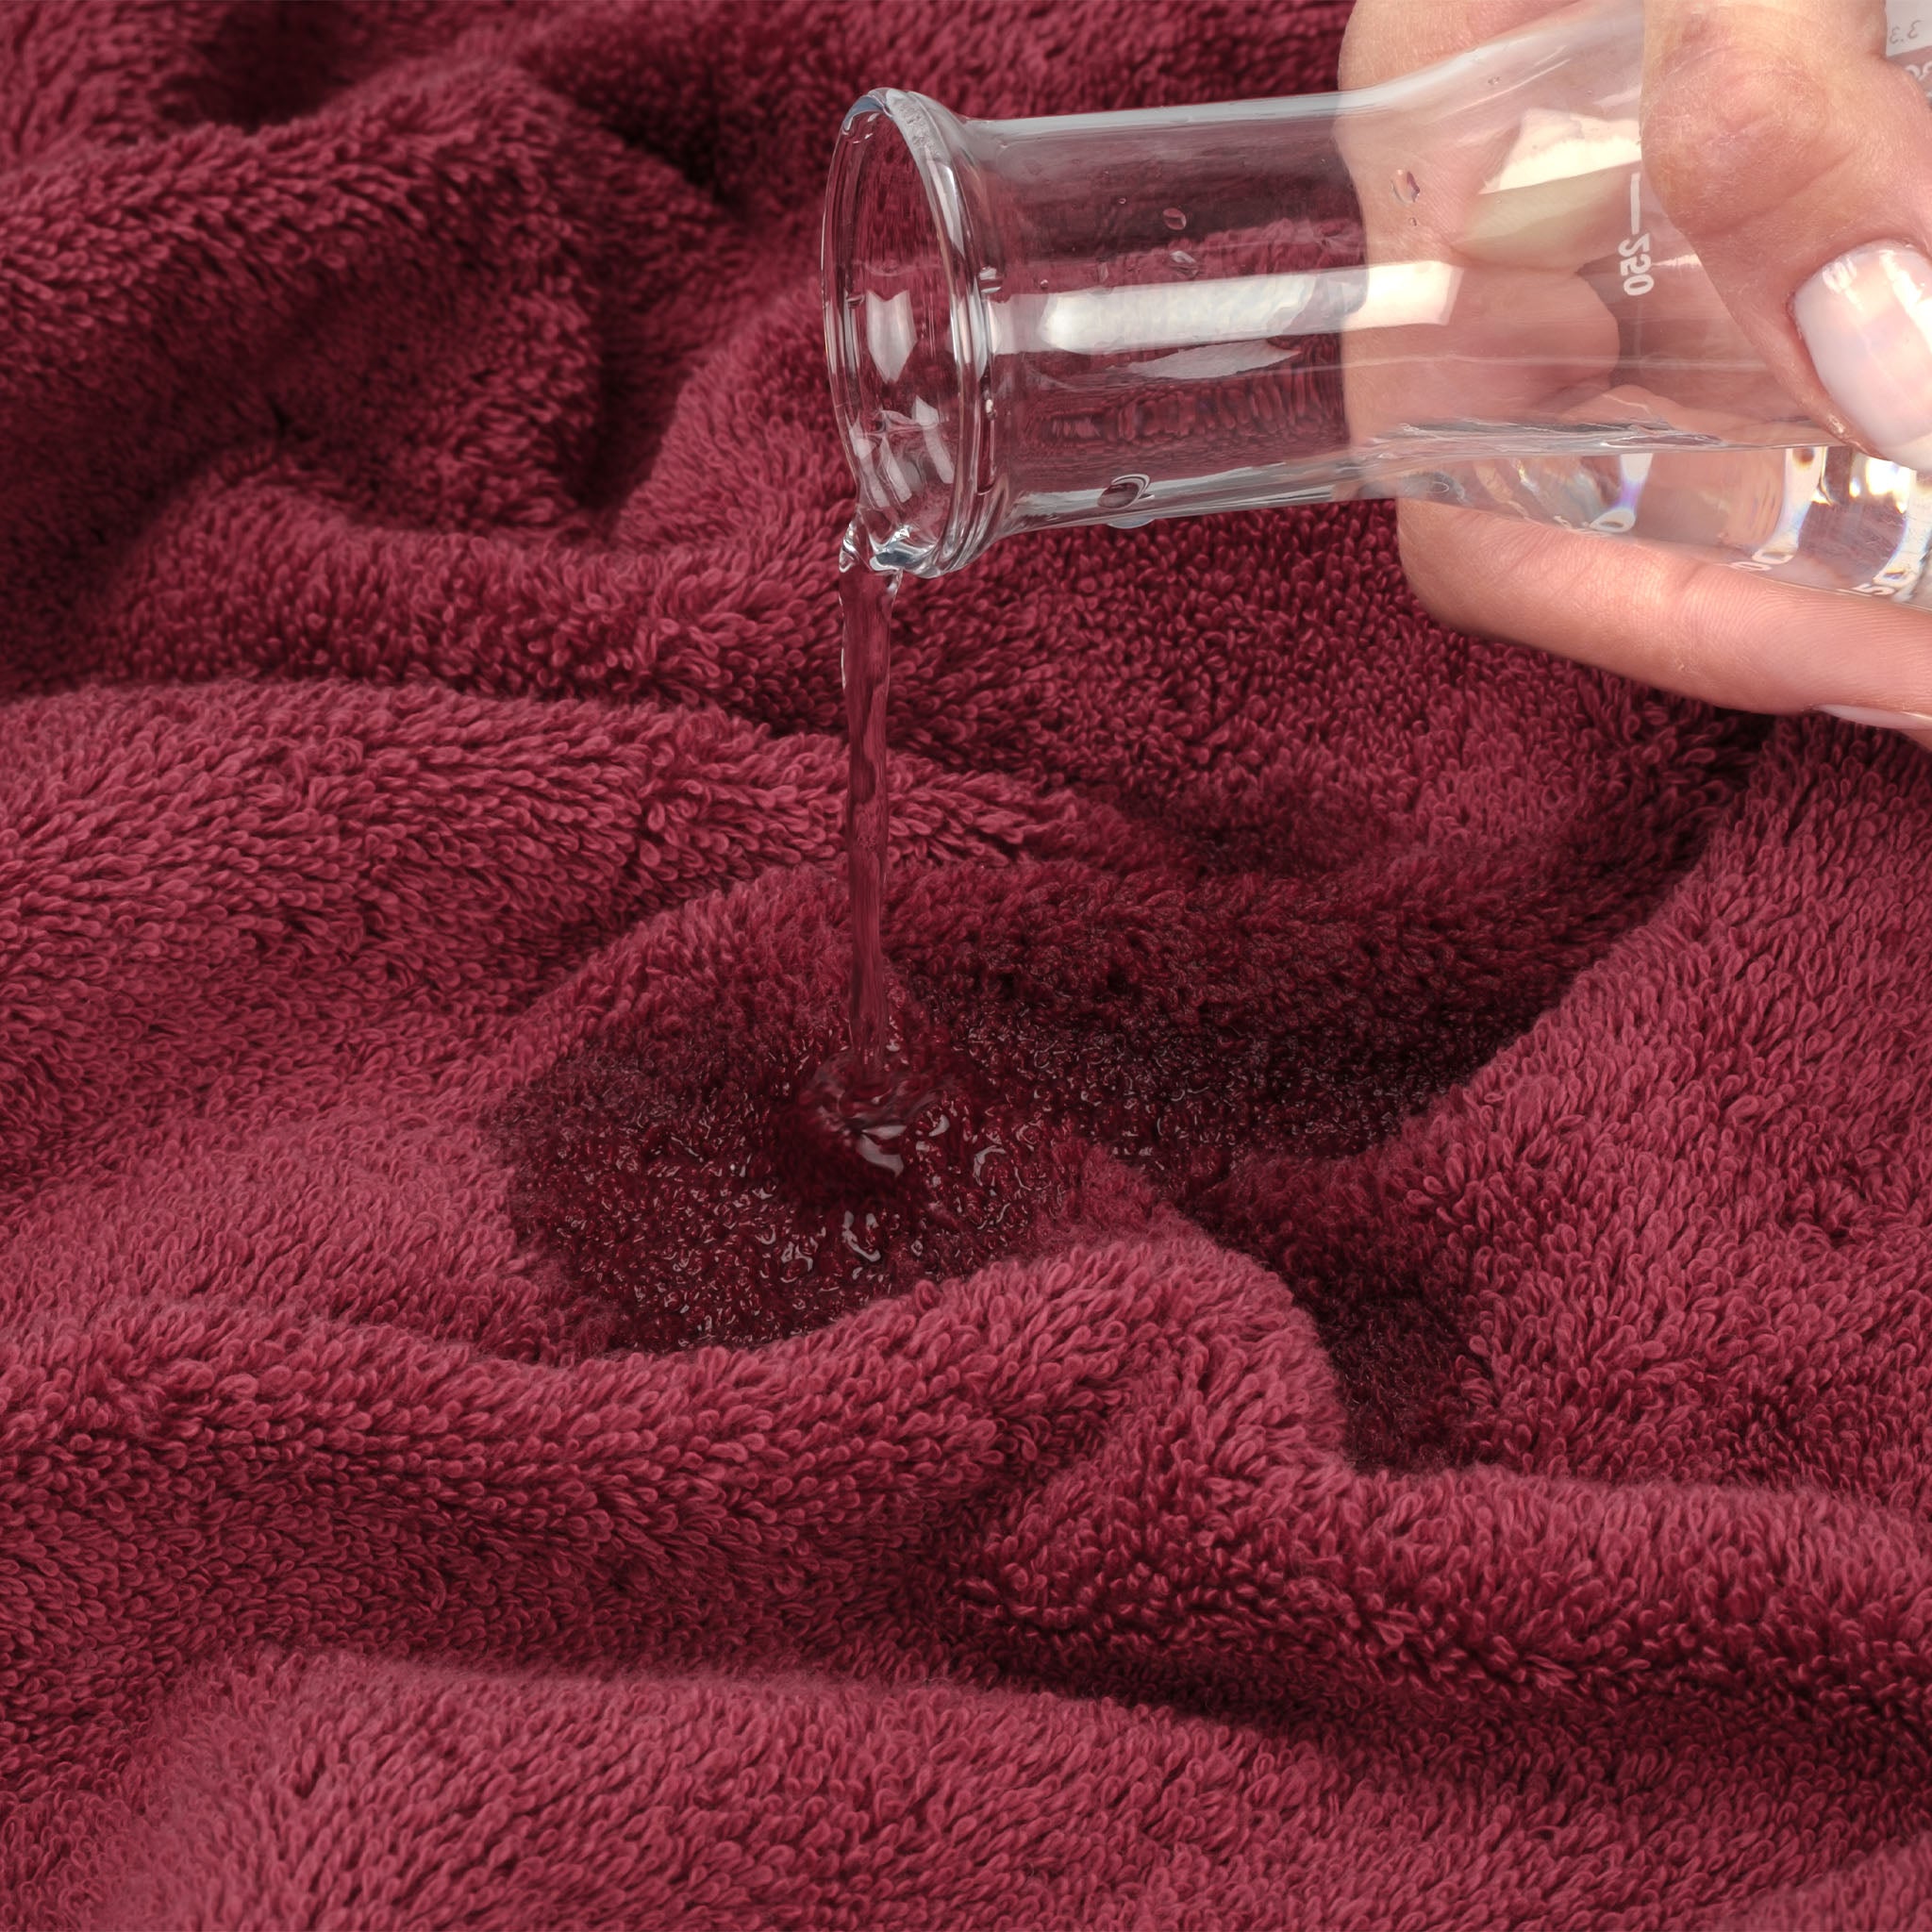 American Soft Linen 100% Turkish Cotton 4 Pack Bath Towel Set Wholesale bordeaux-red-6